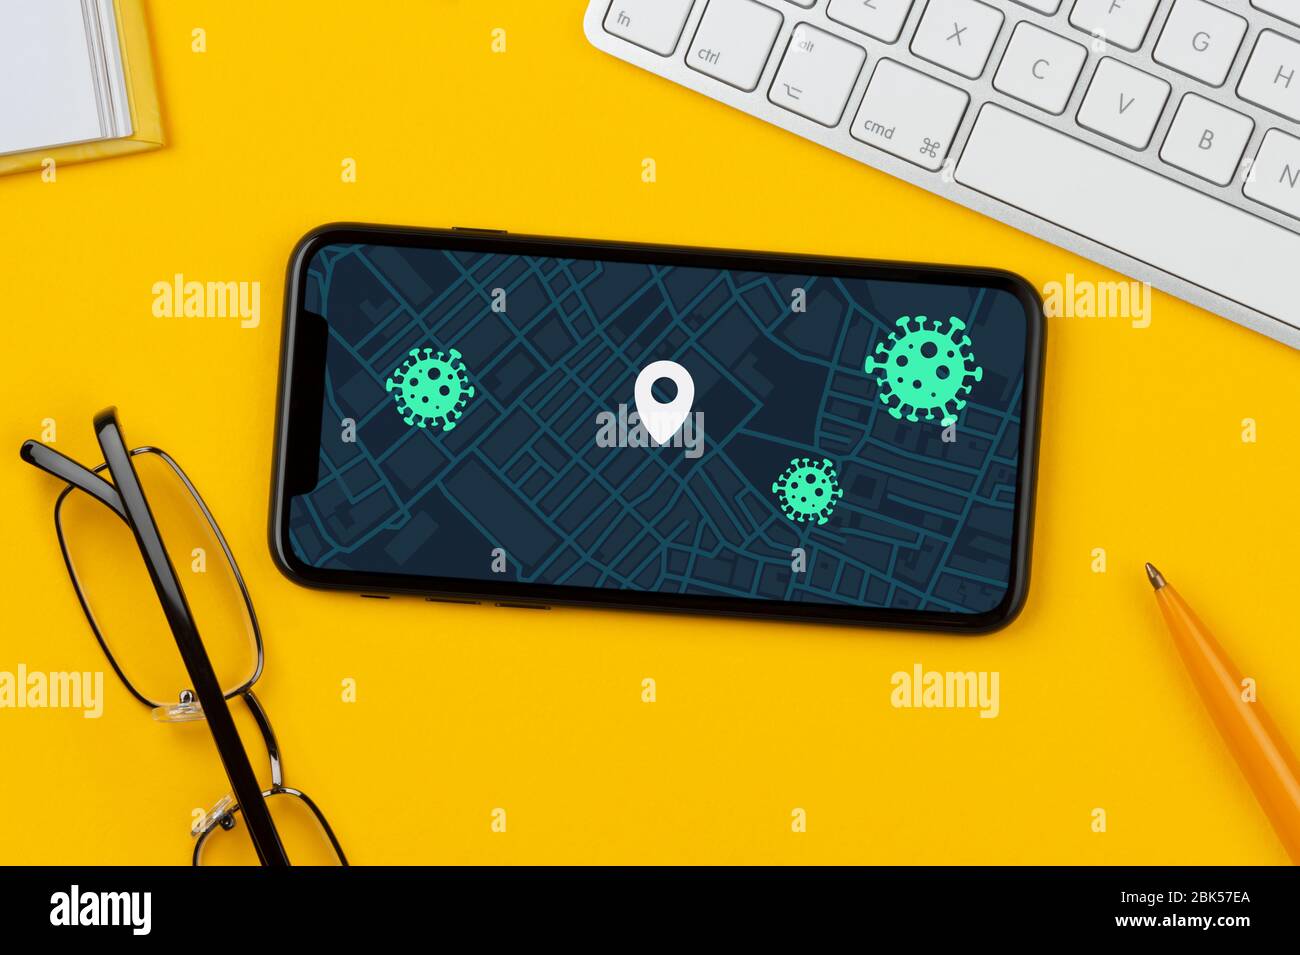 Ein Smartphone, das eine fiktive Covid-19-App zur Kontaktverfolgung zeigt, ruht auf einem gelben Hintergrund zusammen mit Tastatur, Brille, Stift und Buch. Stockfoto